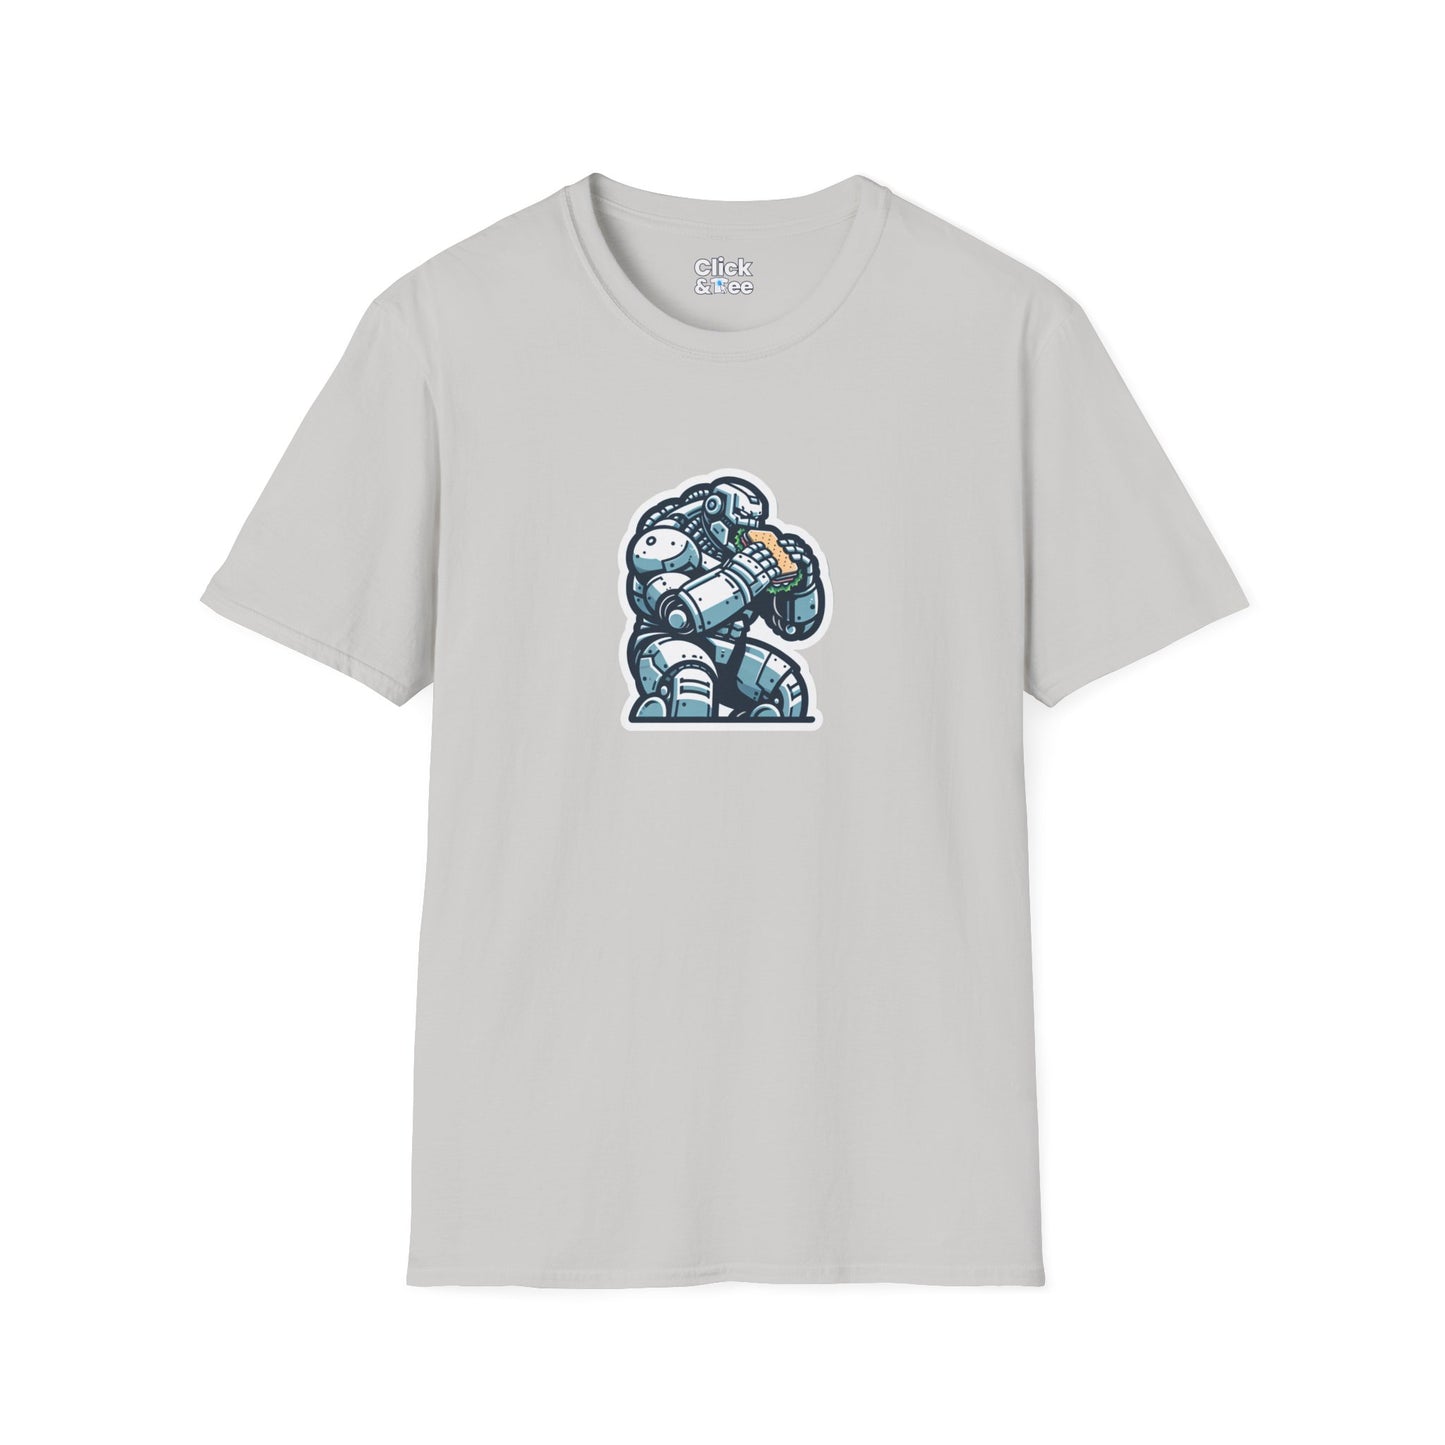 Digital Art T-Shirt - Hulking Robot Eating a sandwich  - Digital Art Style T-Shirt